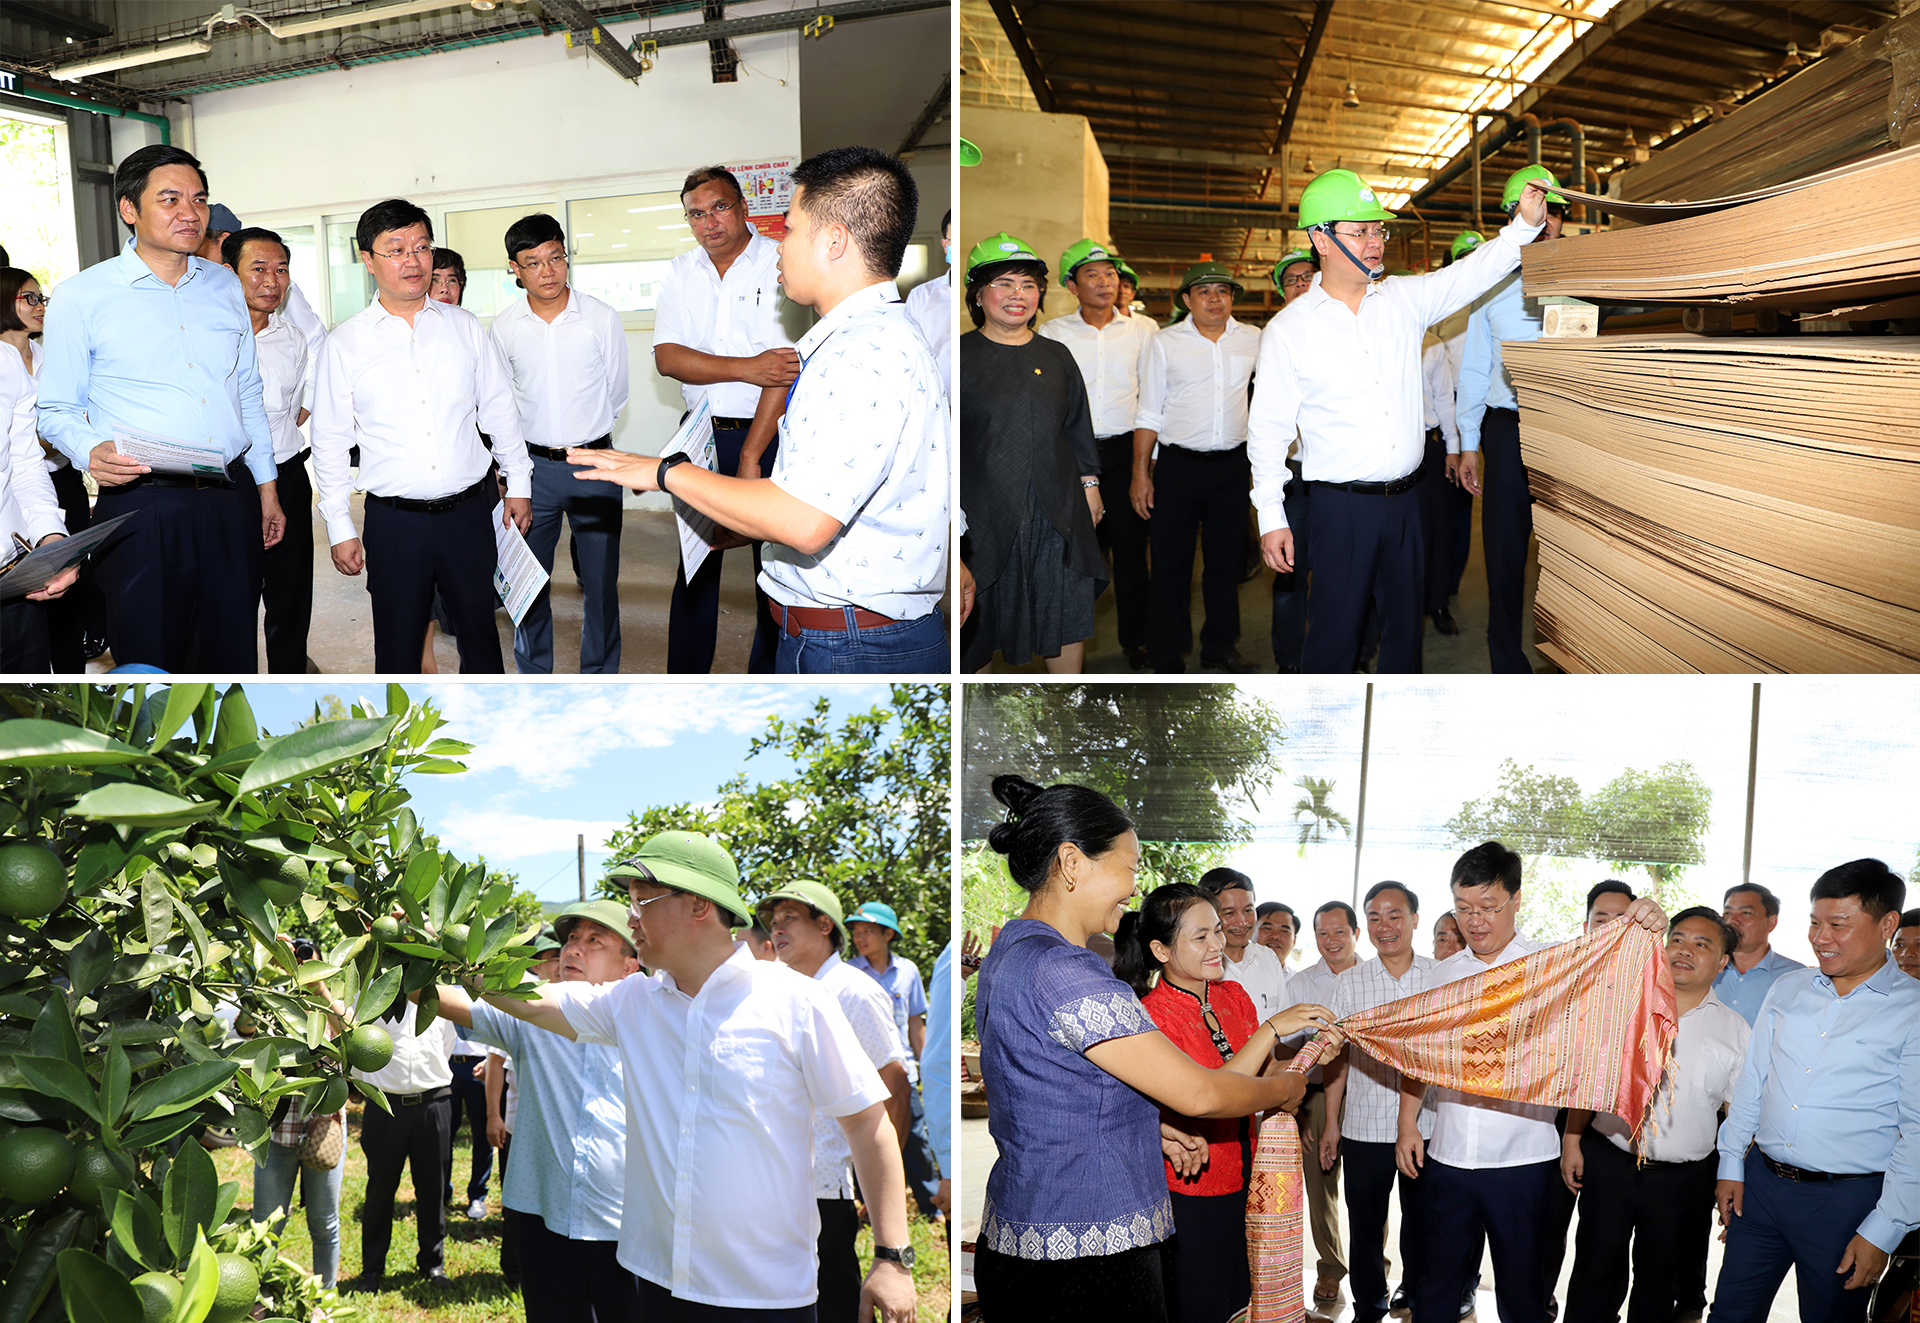 Chủ tịch UBND tỉnh Nguyễn Đức Trung thăm nhà máy sản xuất nước sạch của Tập đoàn TH, Nhà máy ván gỗ MDF thuộc Công ty CP Lâm nghiệp Tháng Năm; thăm mô hình trồng cam tại bản Khe Hán, xã Châu Hạnh và HTX làng nghề thổ cẩm dệt Hoa Tiến (Quỳ Châu).